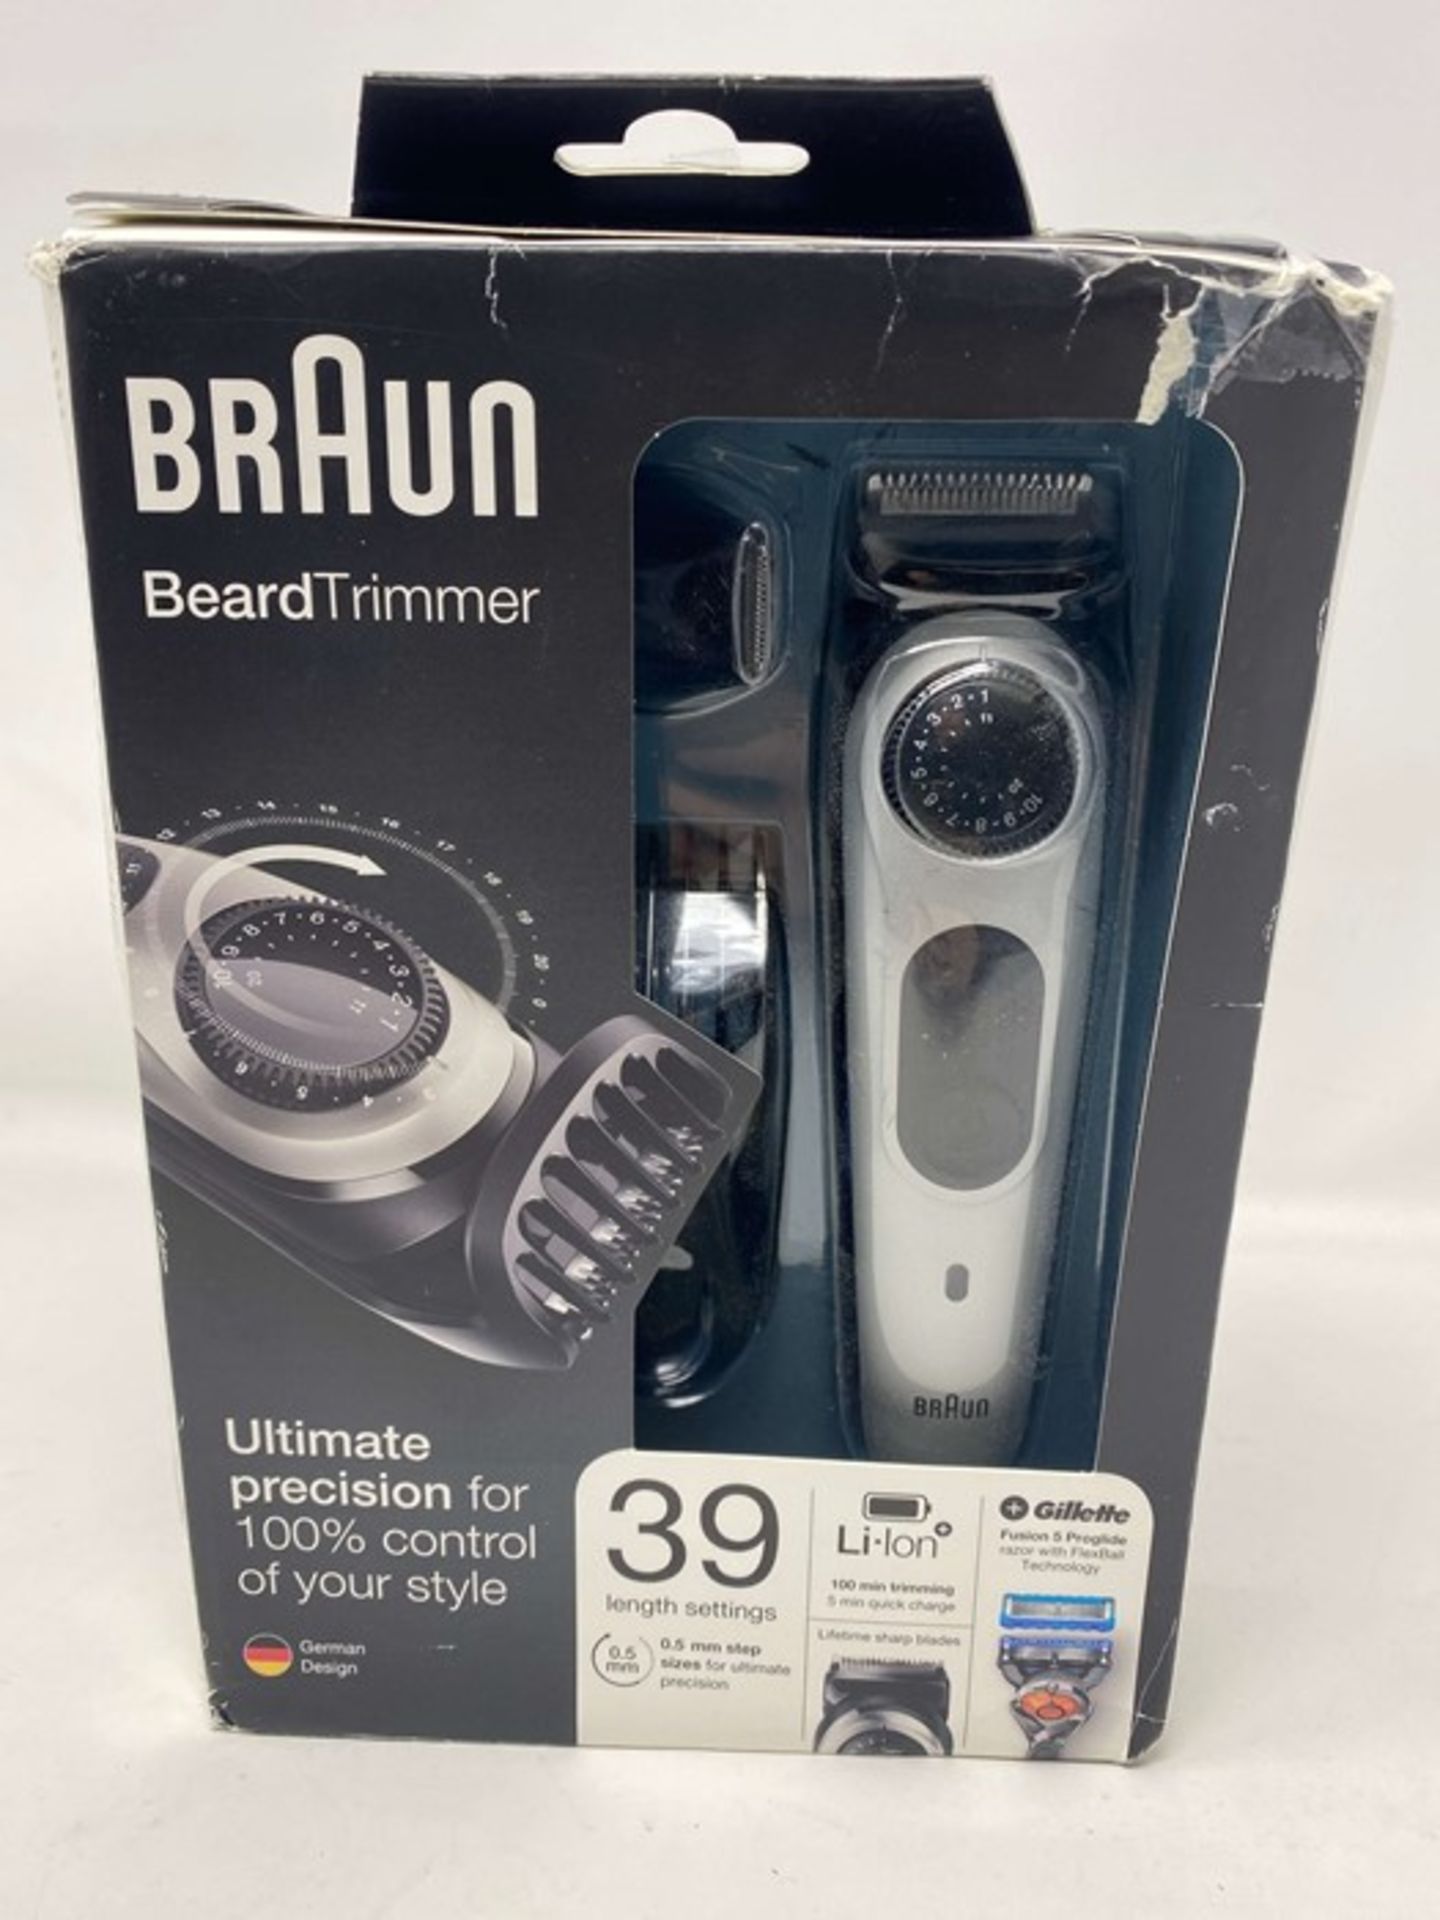 Braun BT5060 Beard Trimmer and Hair Clipper Deta - Image 2 of 2